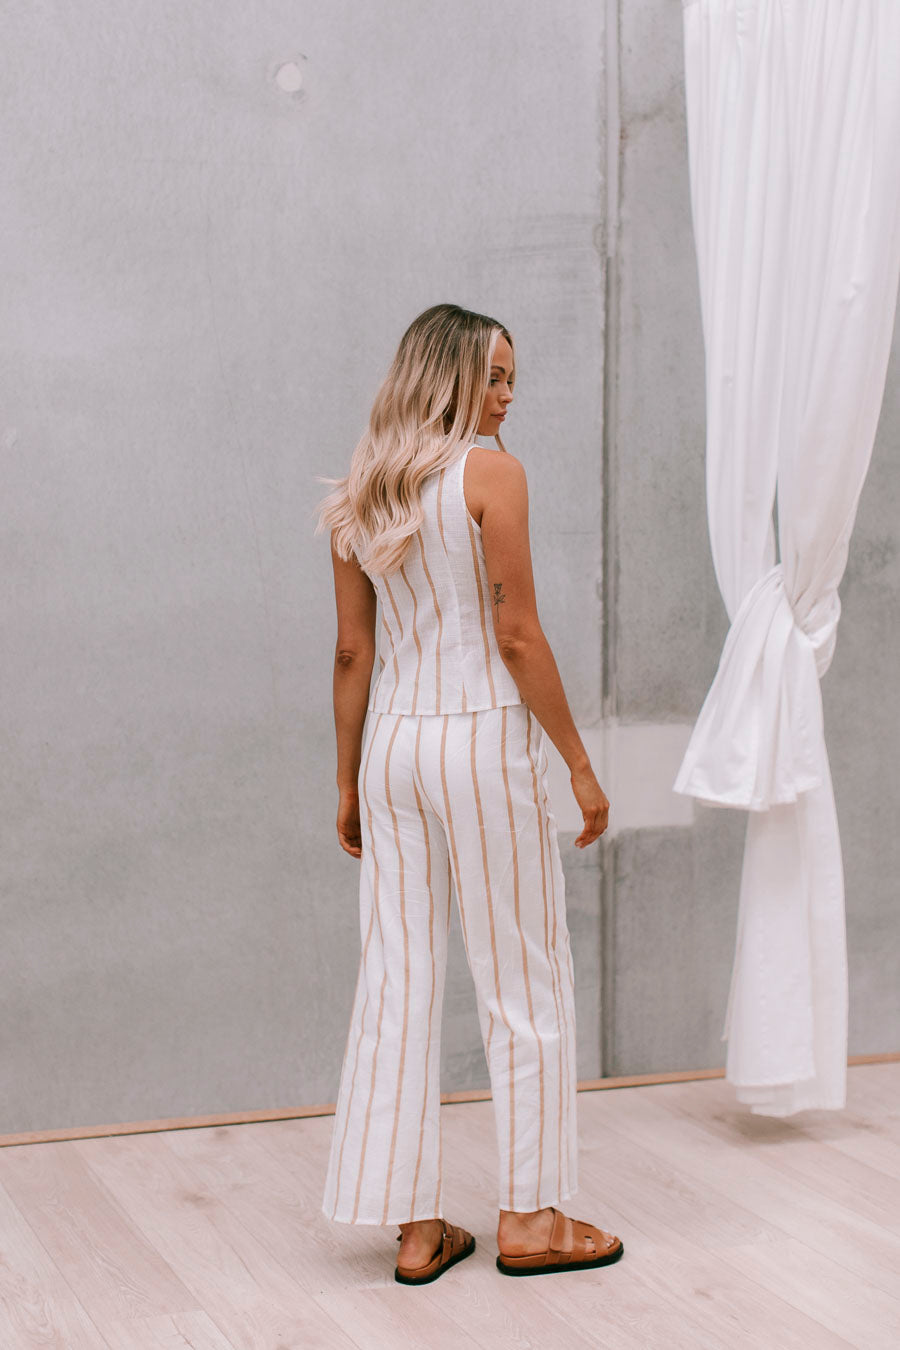 Cora Set - White/Tan Stripe